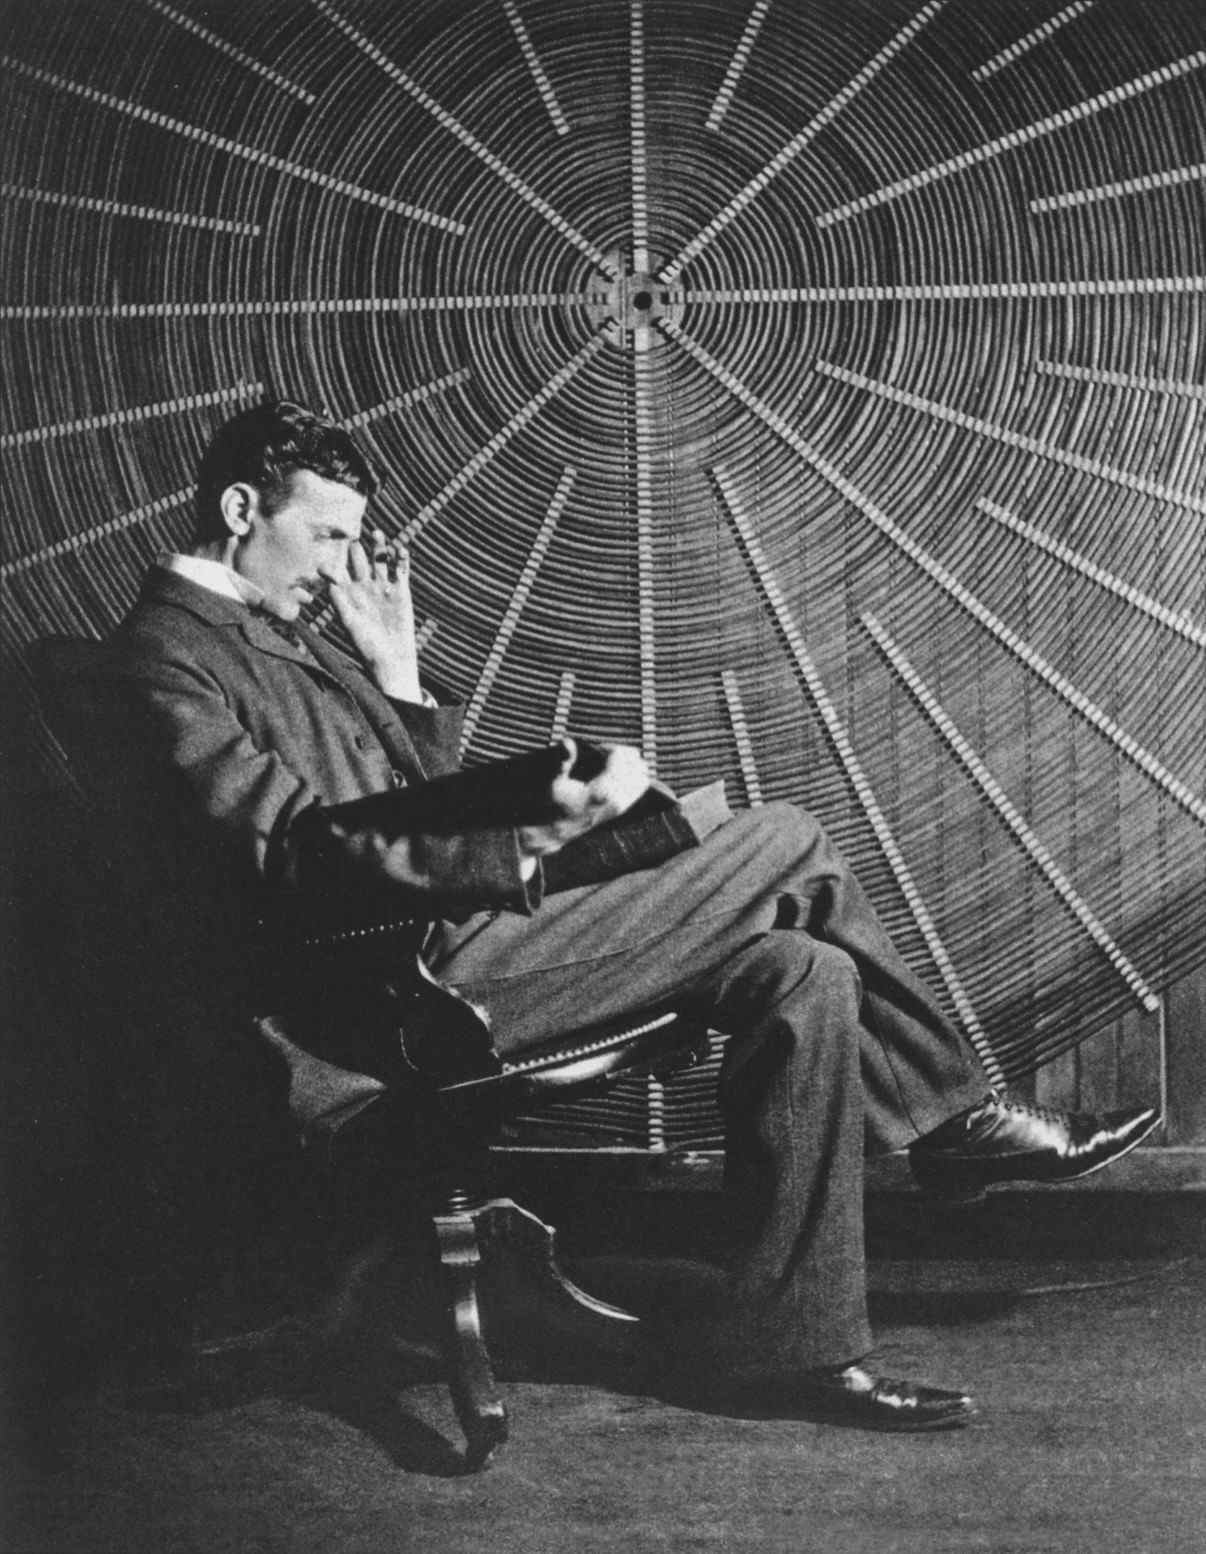 Tesla đang ngồi trước một cuộn dây xoắn ốc được sử dụng trong các thí nghiệm điện không dây của mình tại phòng thí nghiệm East Houston St.